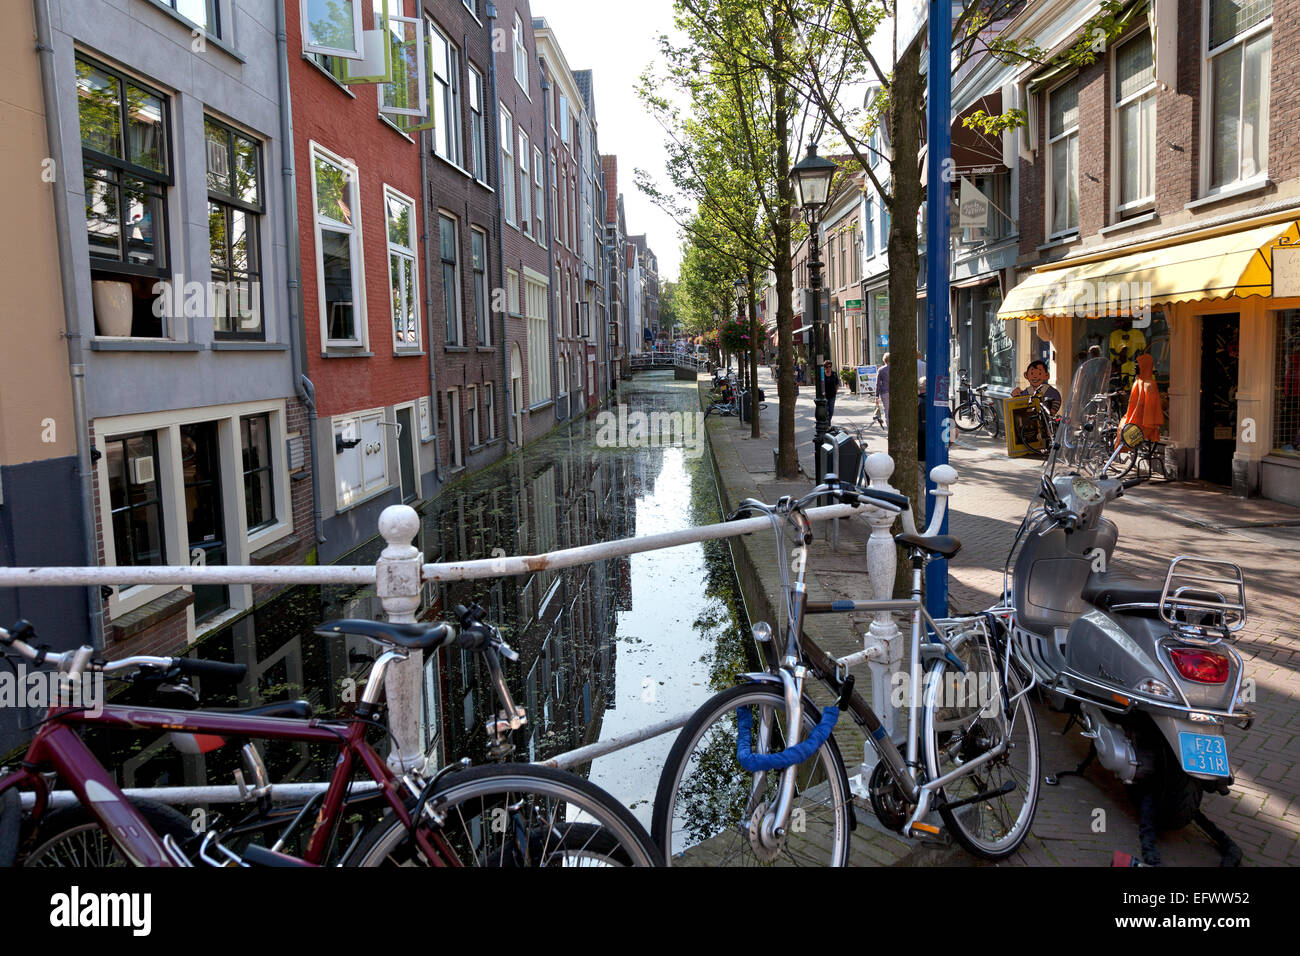 Piccolo canale di Delft in estate, Paesi Bassi Foto Stock